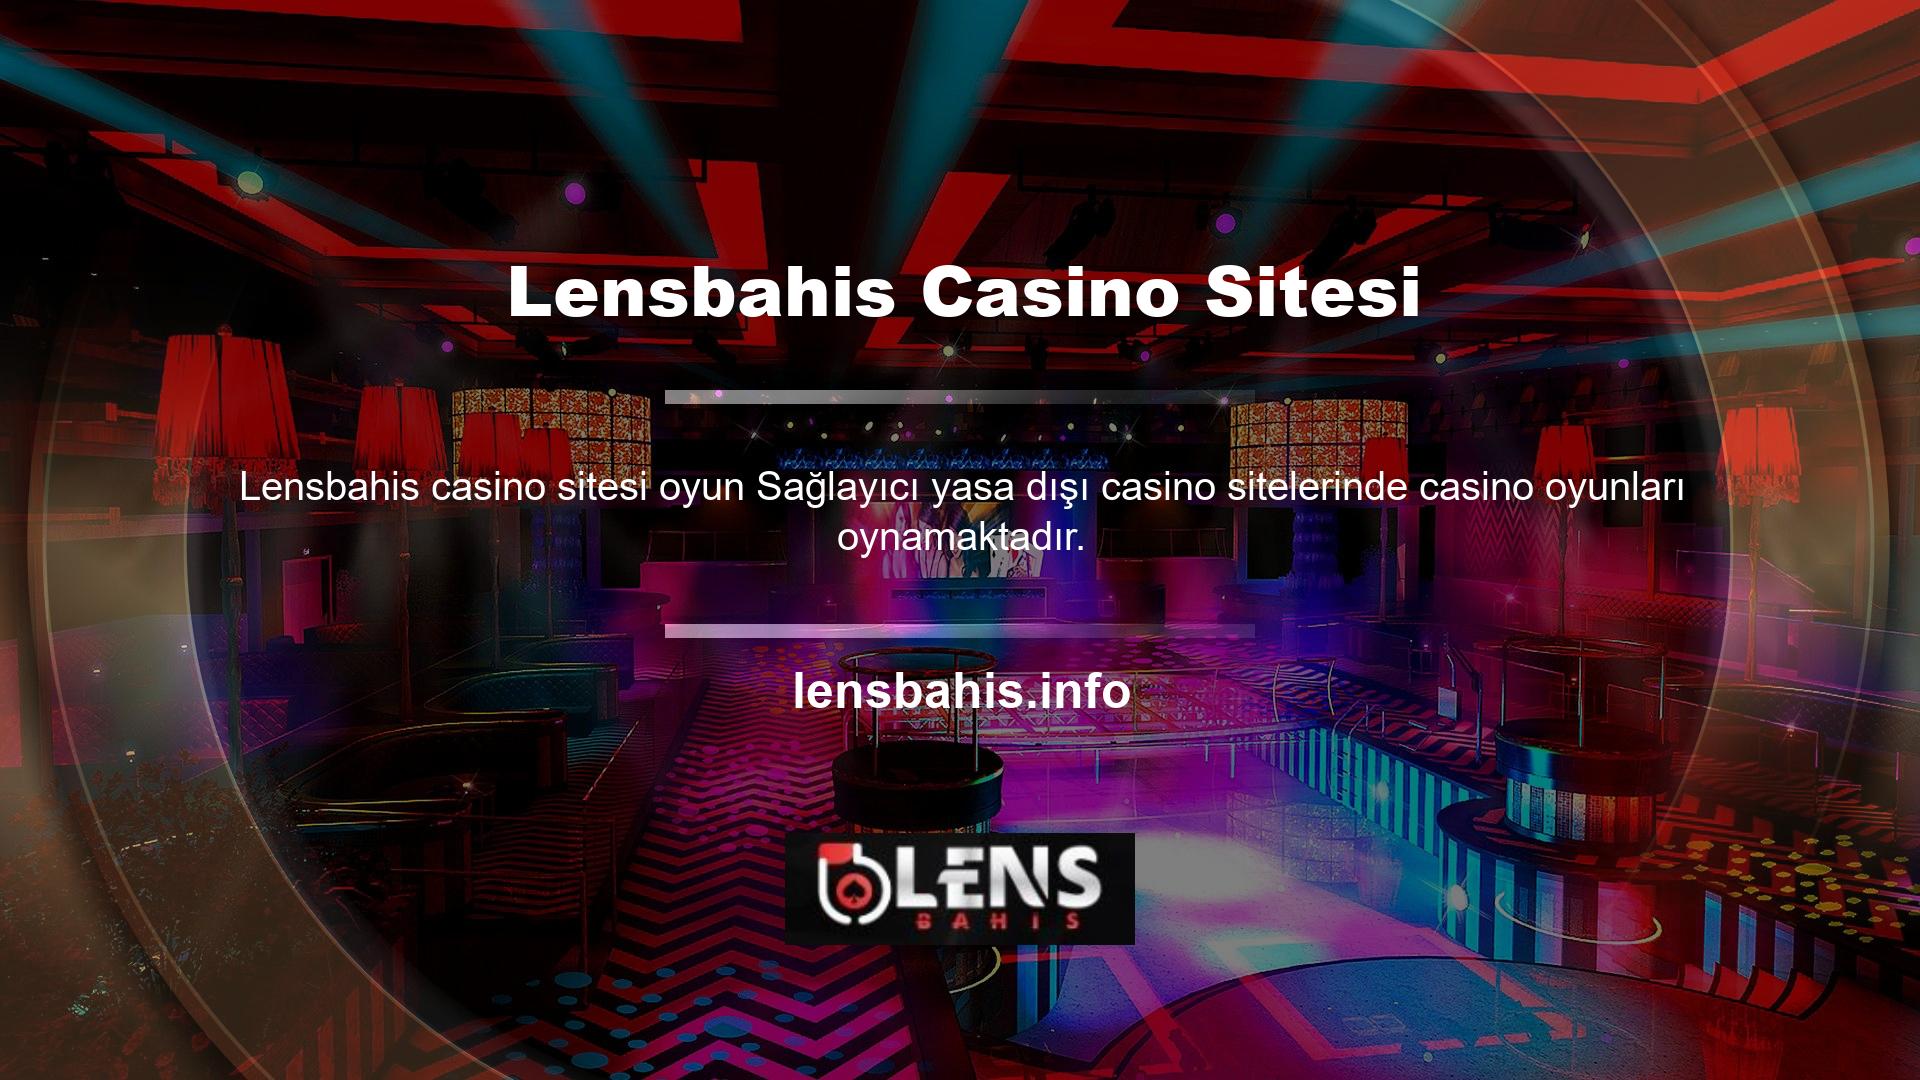 Bu oyun sağlayıcı Lensbahis casino sitesini araştırdığımızda onlarca oyun sağlayıcının bulunduğunu gördük